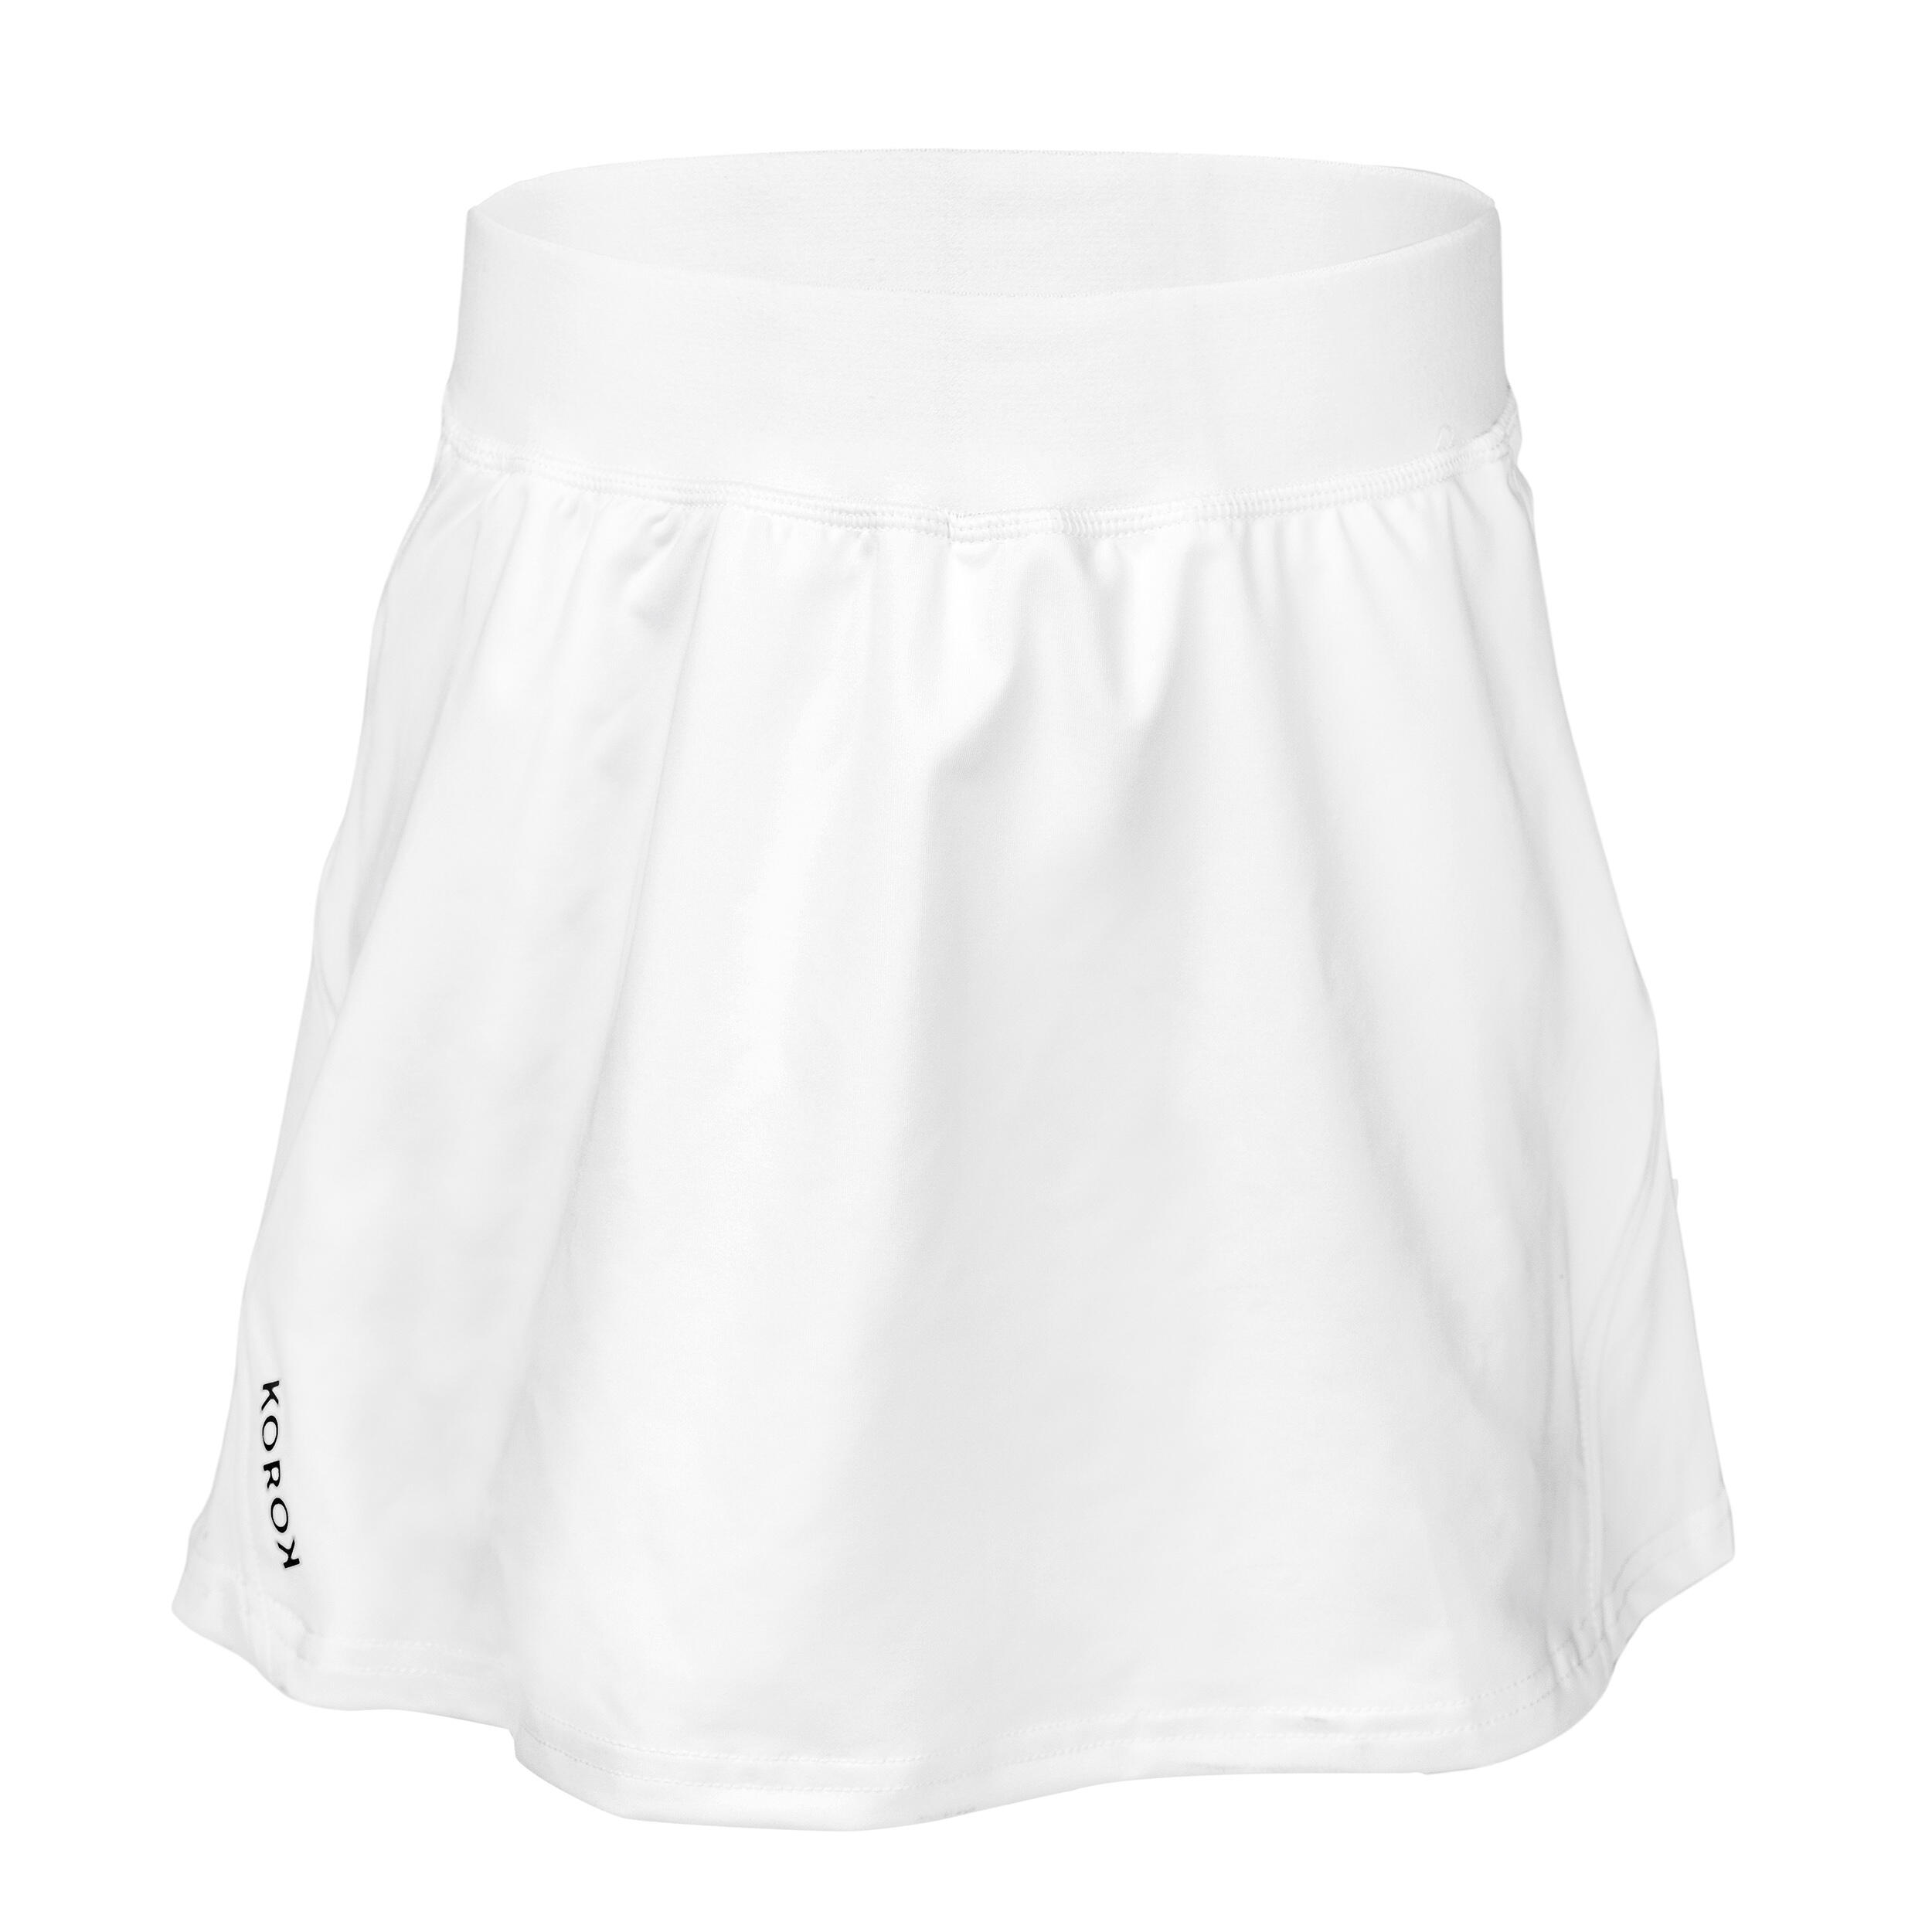 Women's High-Intensity Field Hockey Skirt FH900 - White 1/4